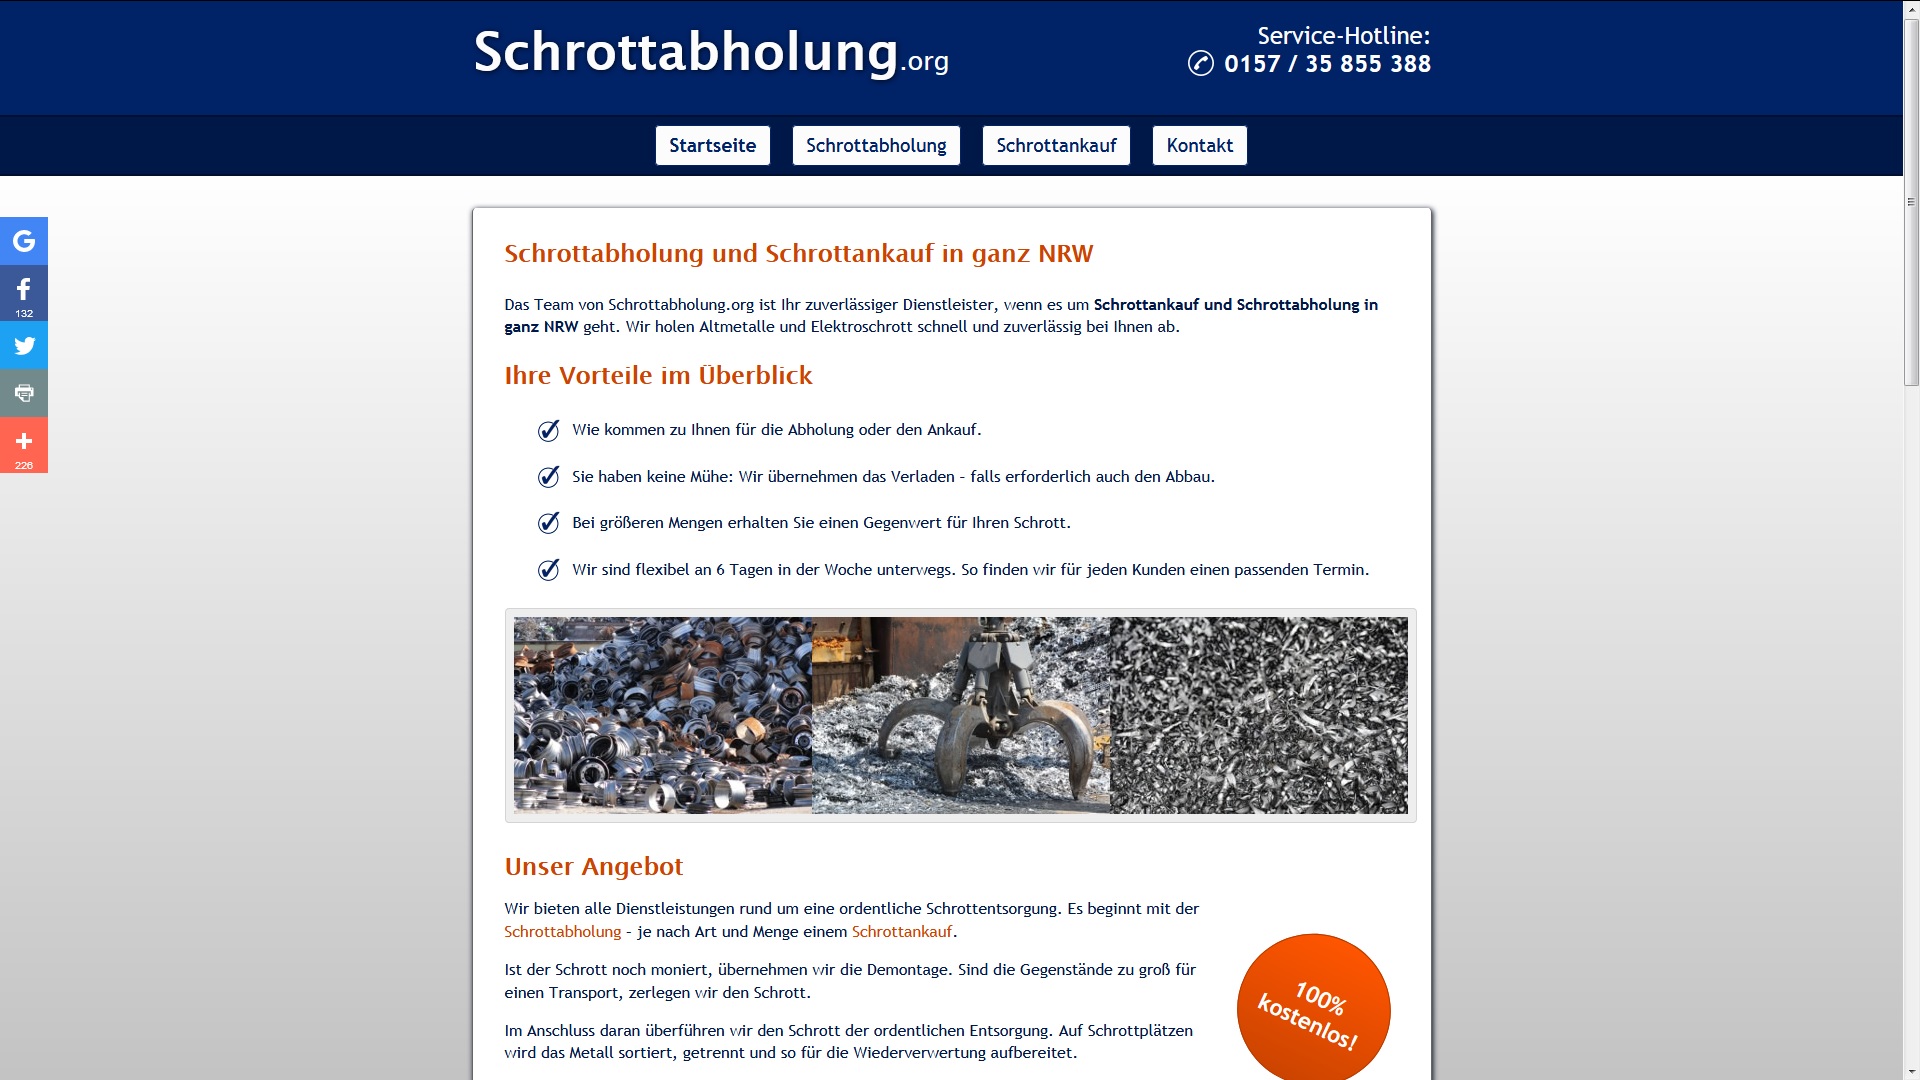 schrottabholung org in nrw - Schrottabholung.org in NRW